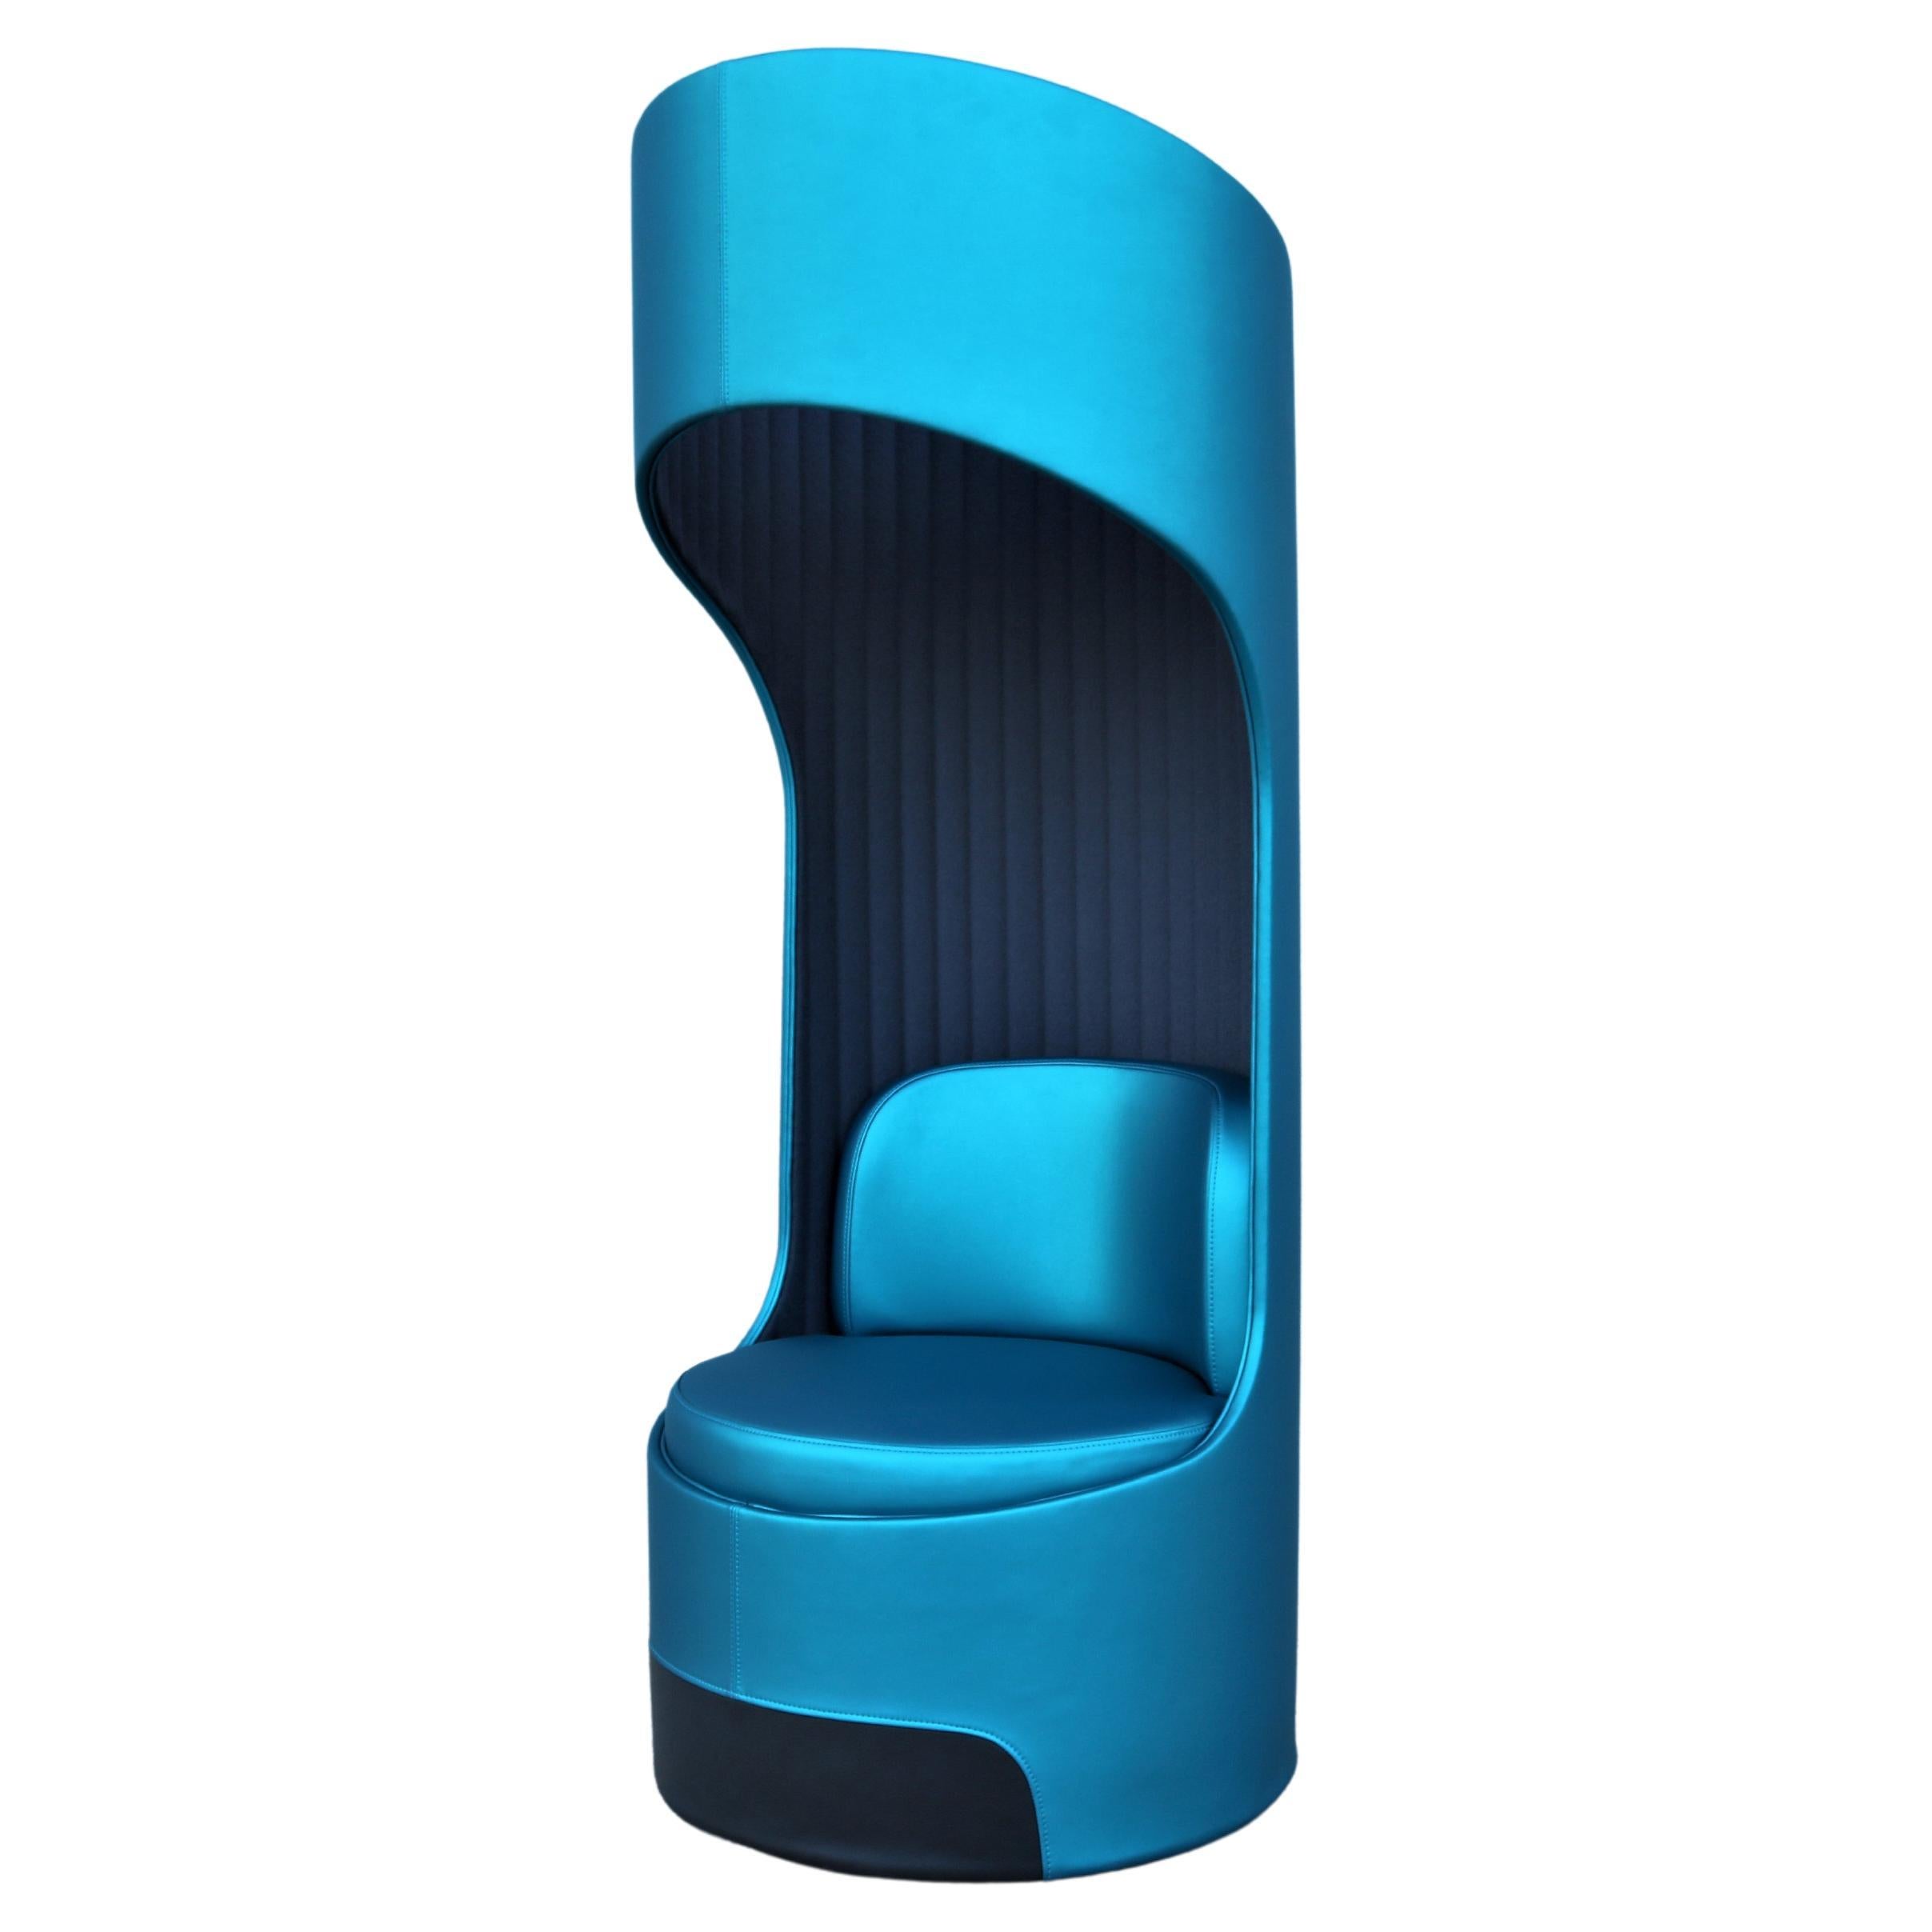 Chaise longue pivotante Cega moderne de Boss Design fabriquée au Royaume-Uni